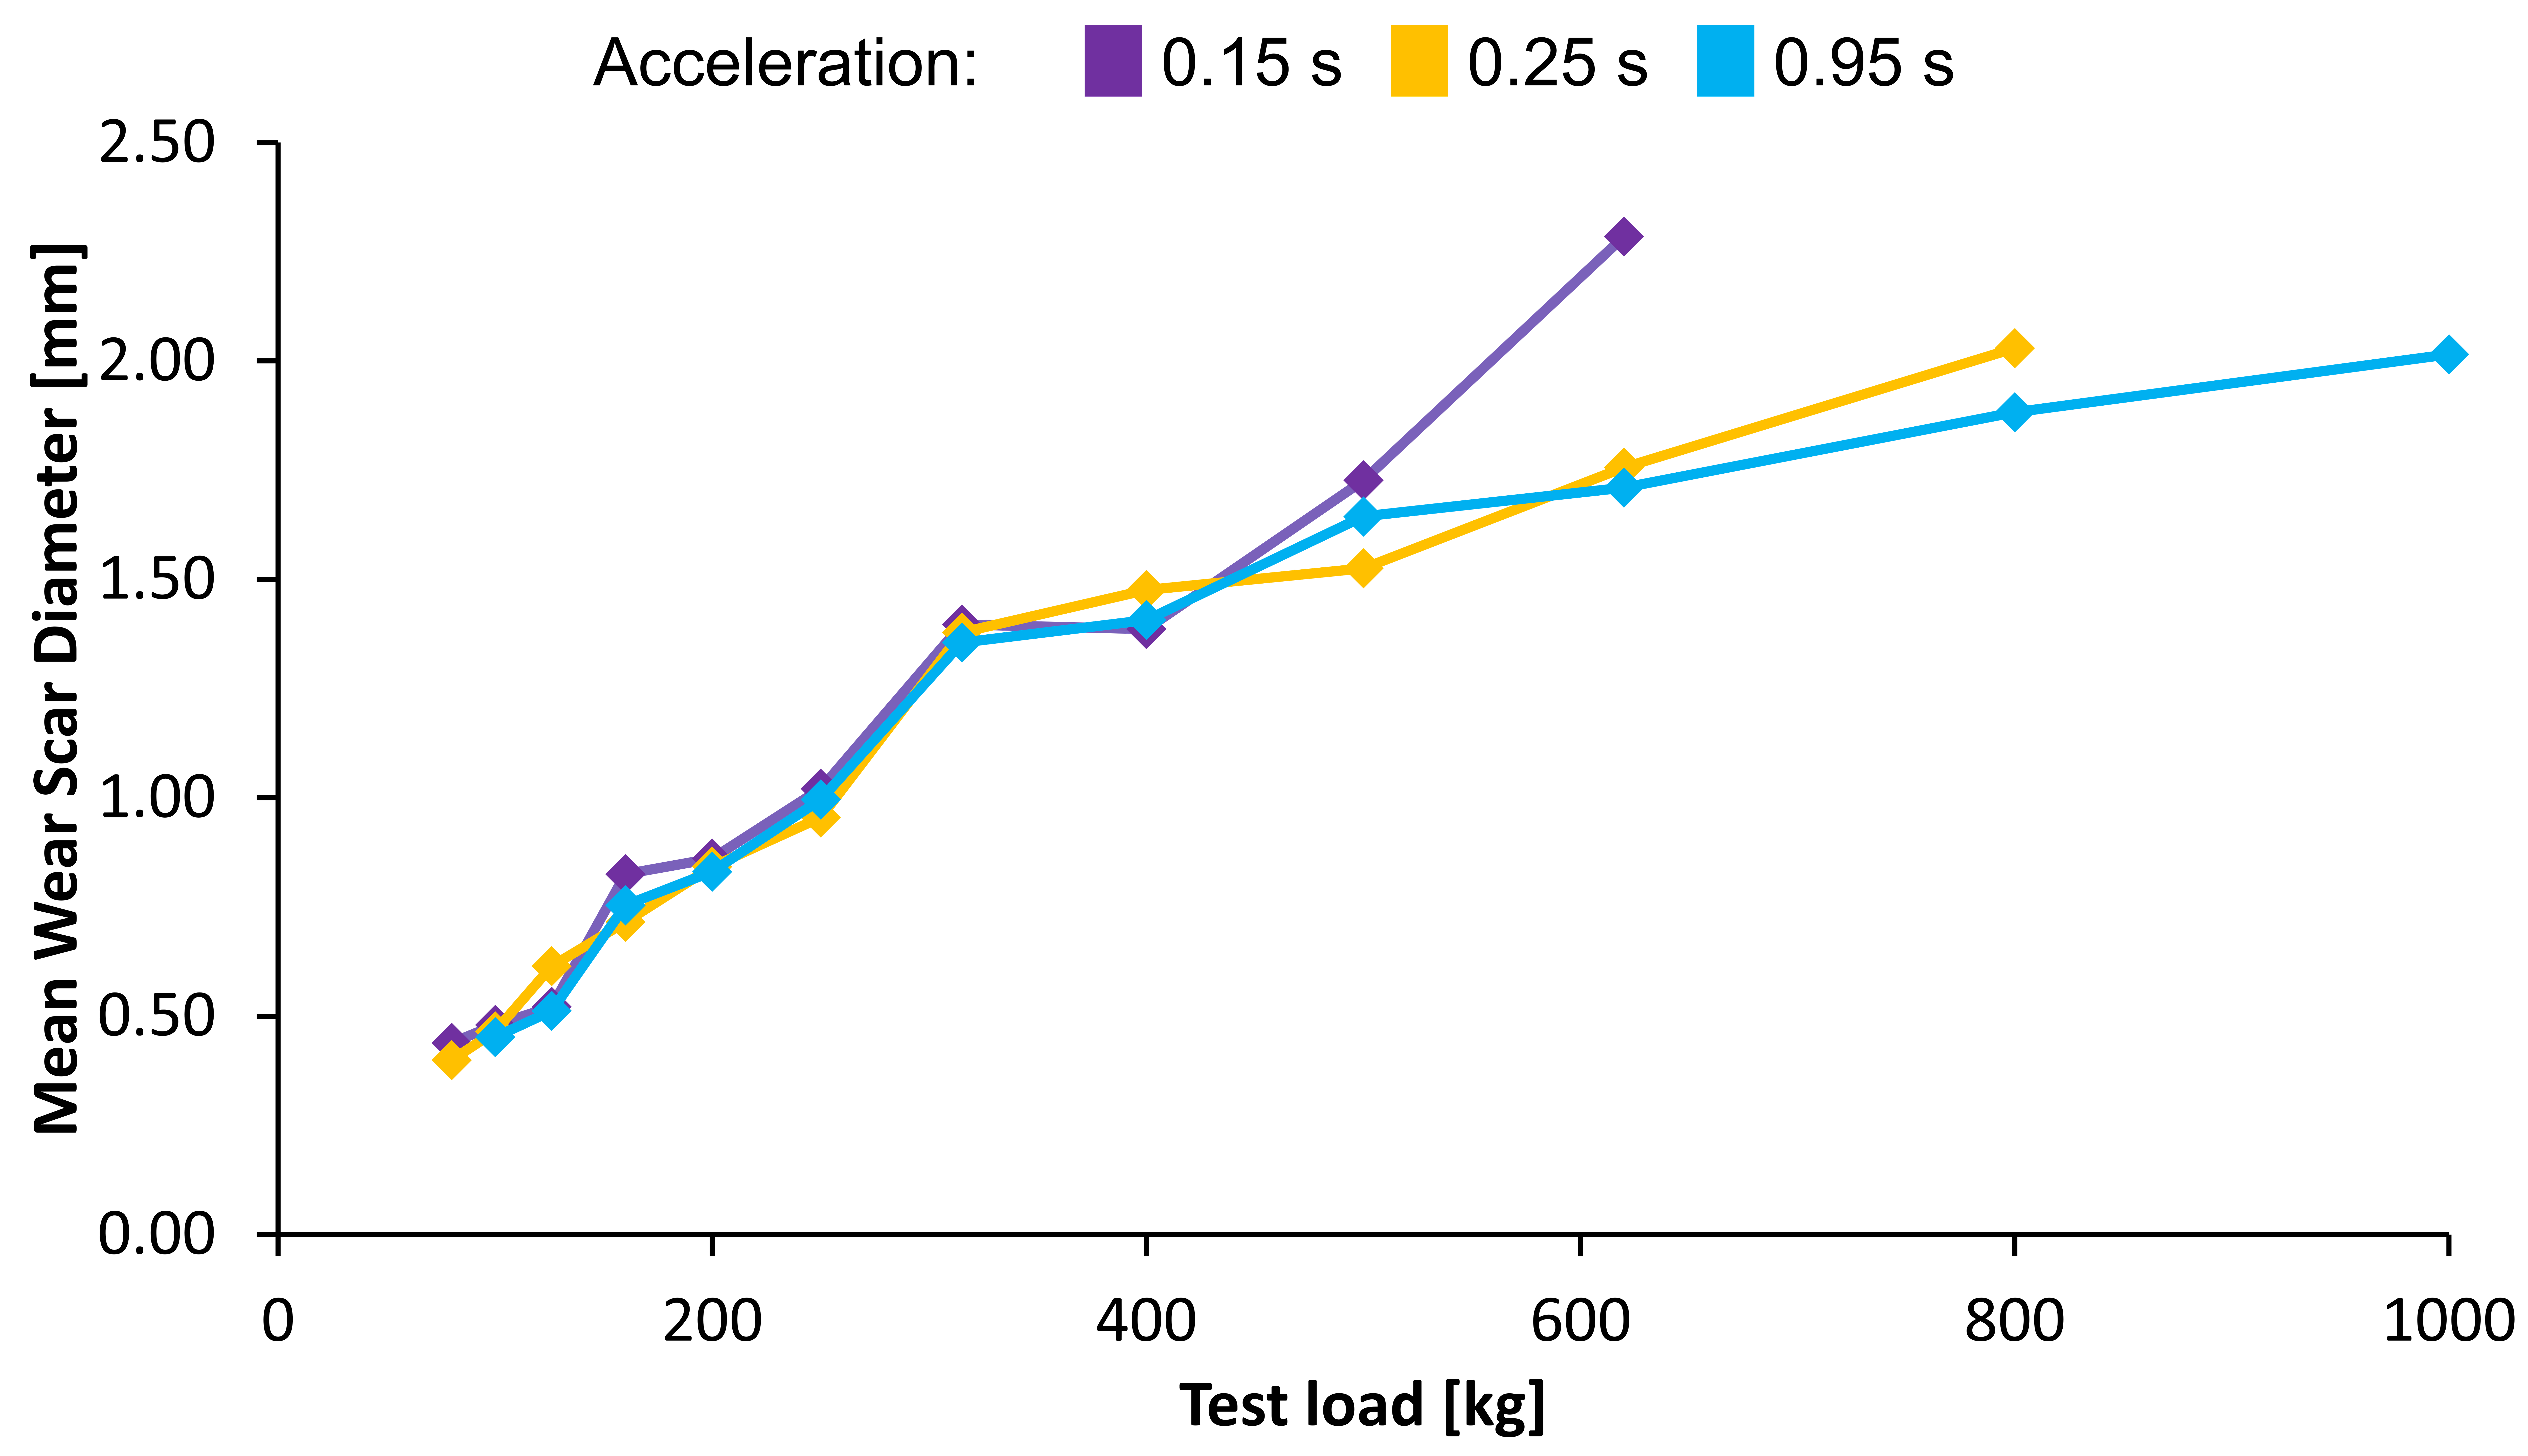 Figure 3 - Evolution of Wear Scar over test load